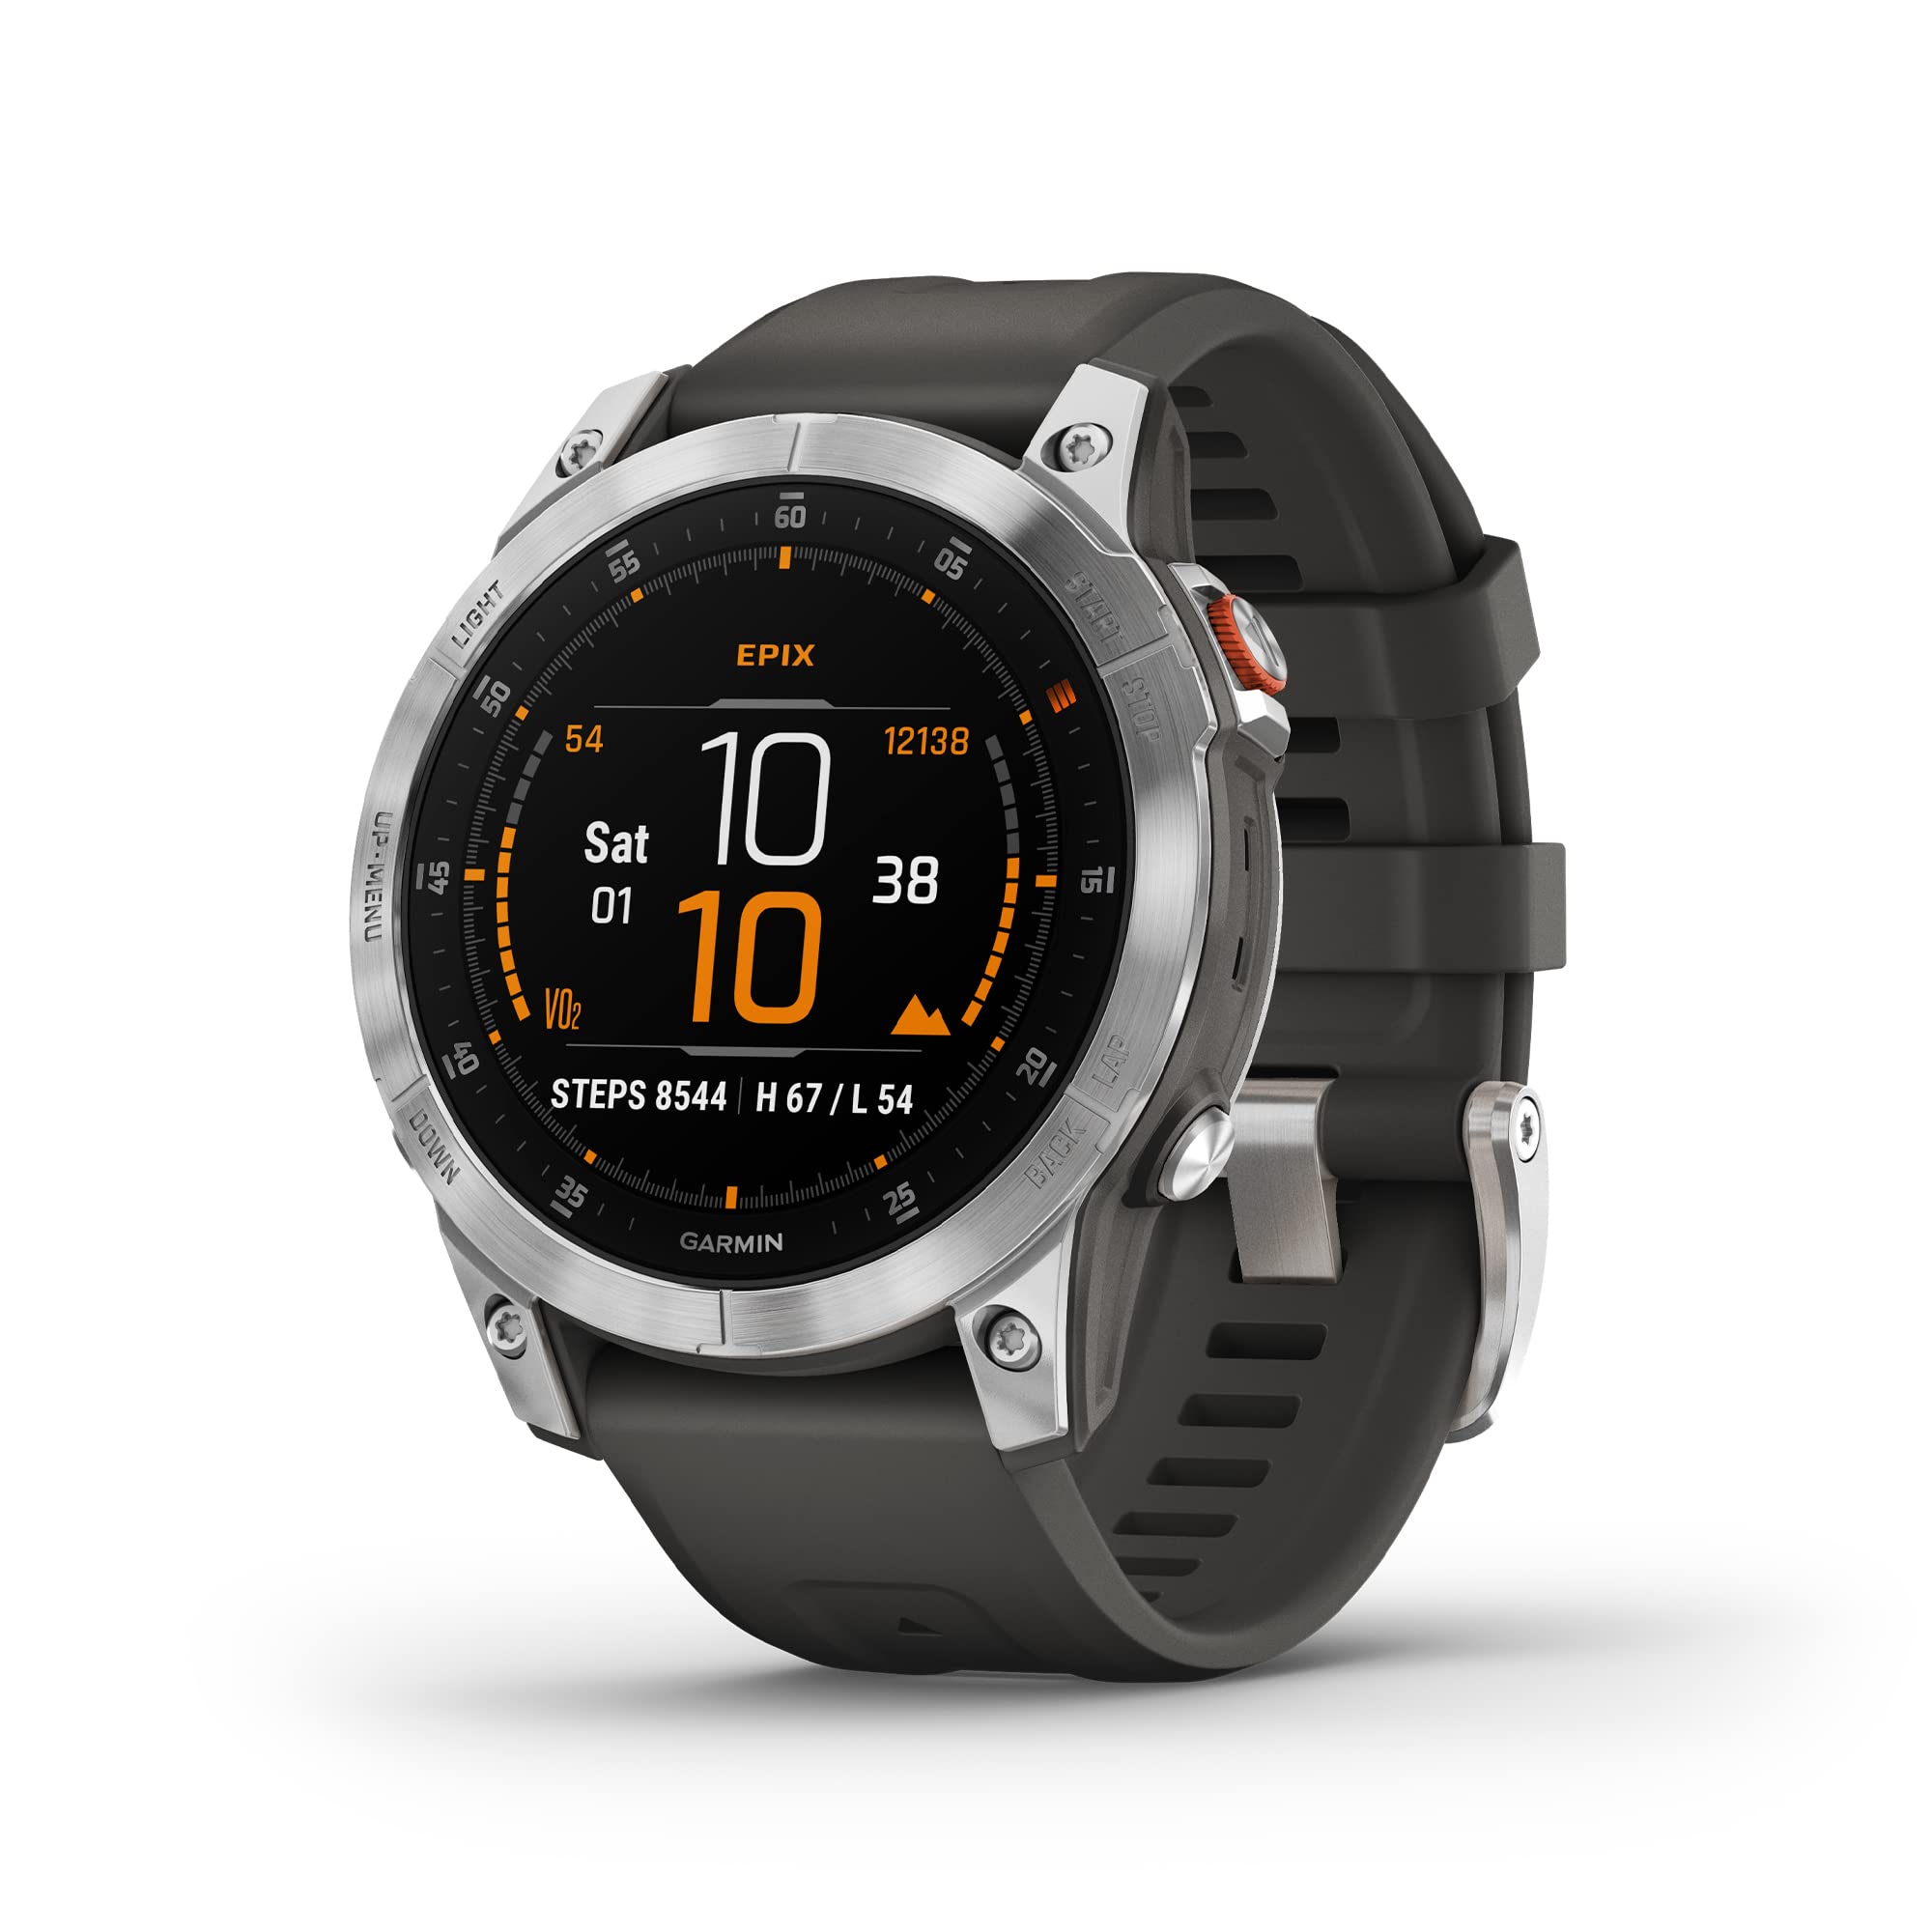 Garmin epix Gen 2, Premium Active smartwatch, Adventure Watch with Advanced Features, Slate Steel & Garmin QuickFit 22 Watch Band - Chestnut Leather